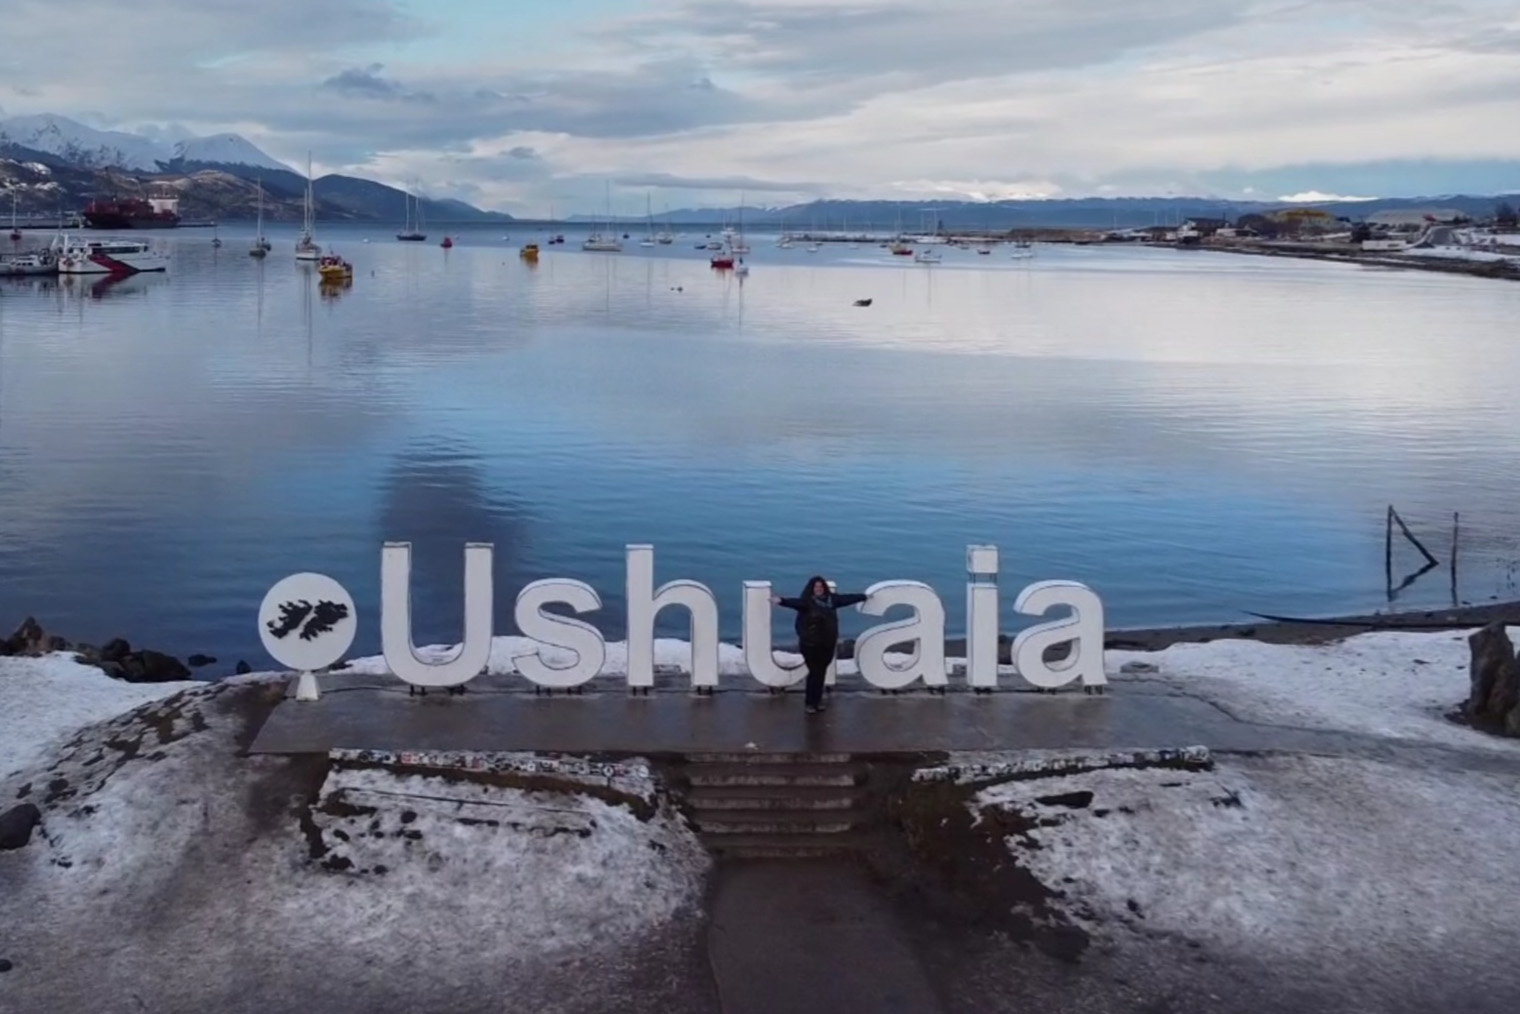 С площадки с гигантской надписью Ushuaia открывается панорамный вид на канал и город